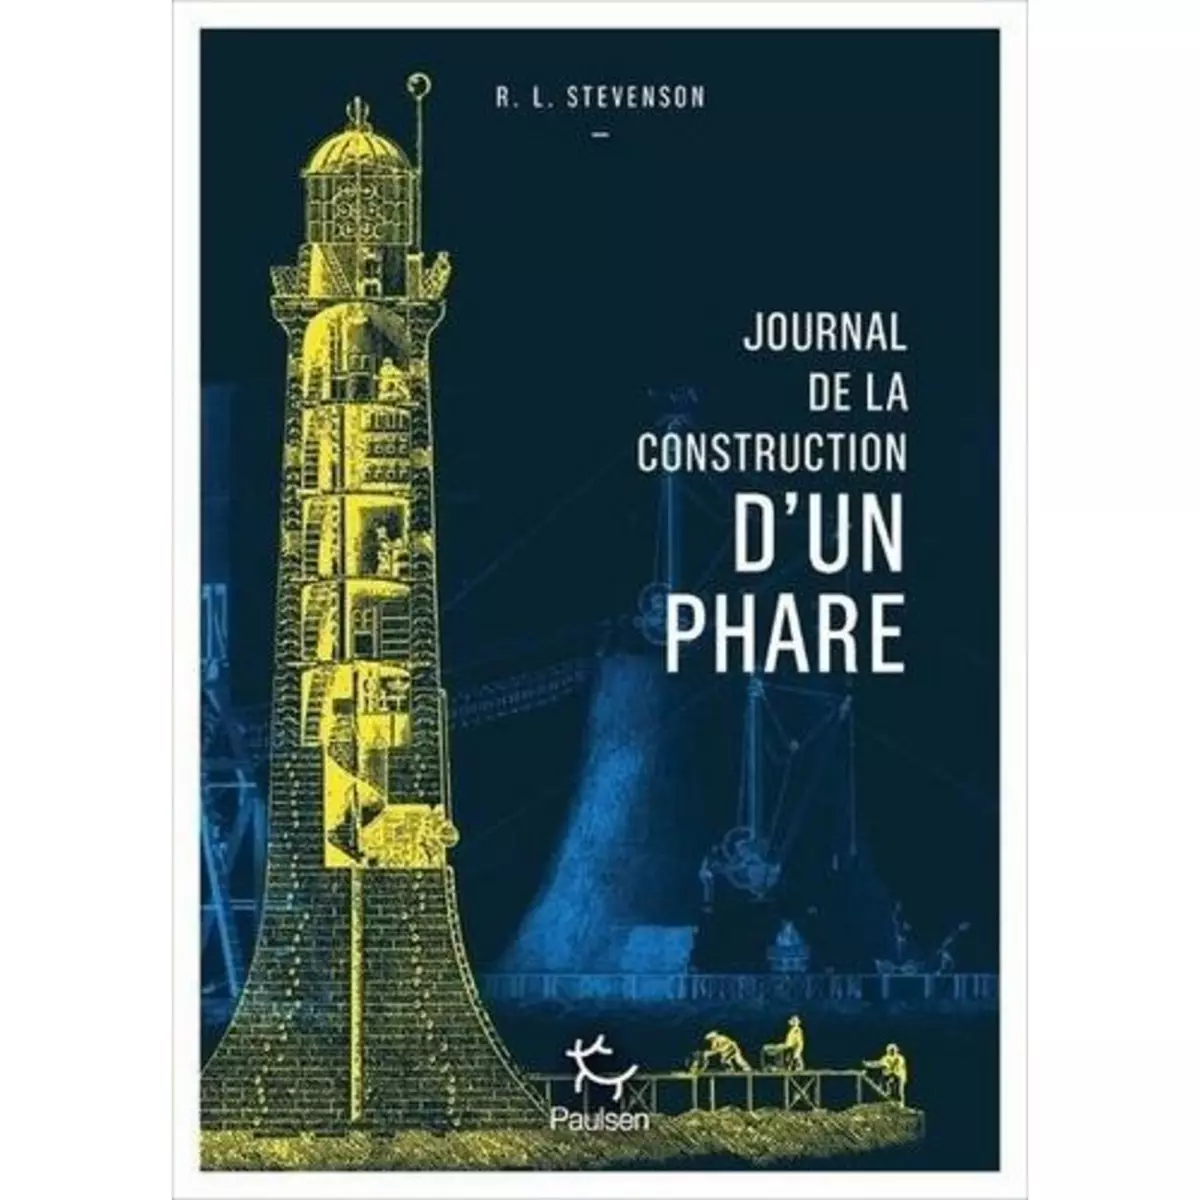  JOURNAL DE LA CONSTRUCTION D'UN PHARE, Stevenson Robert Louis